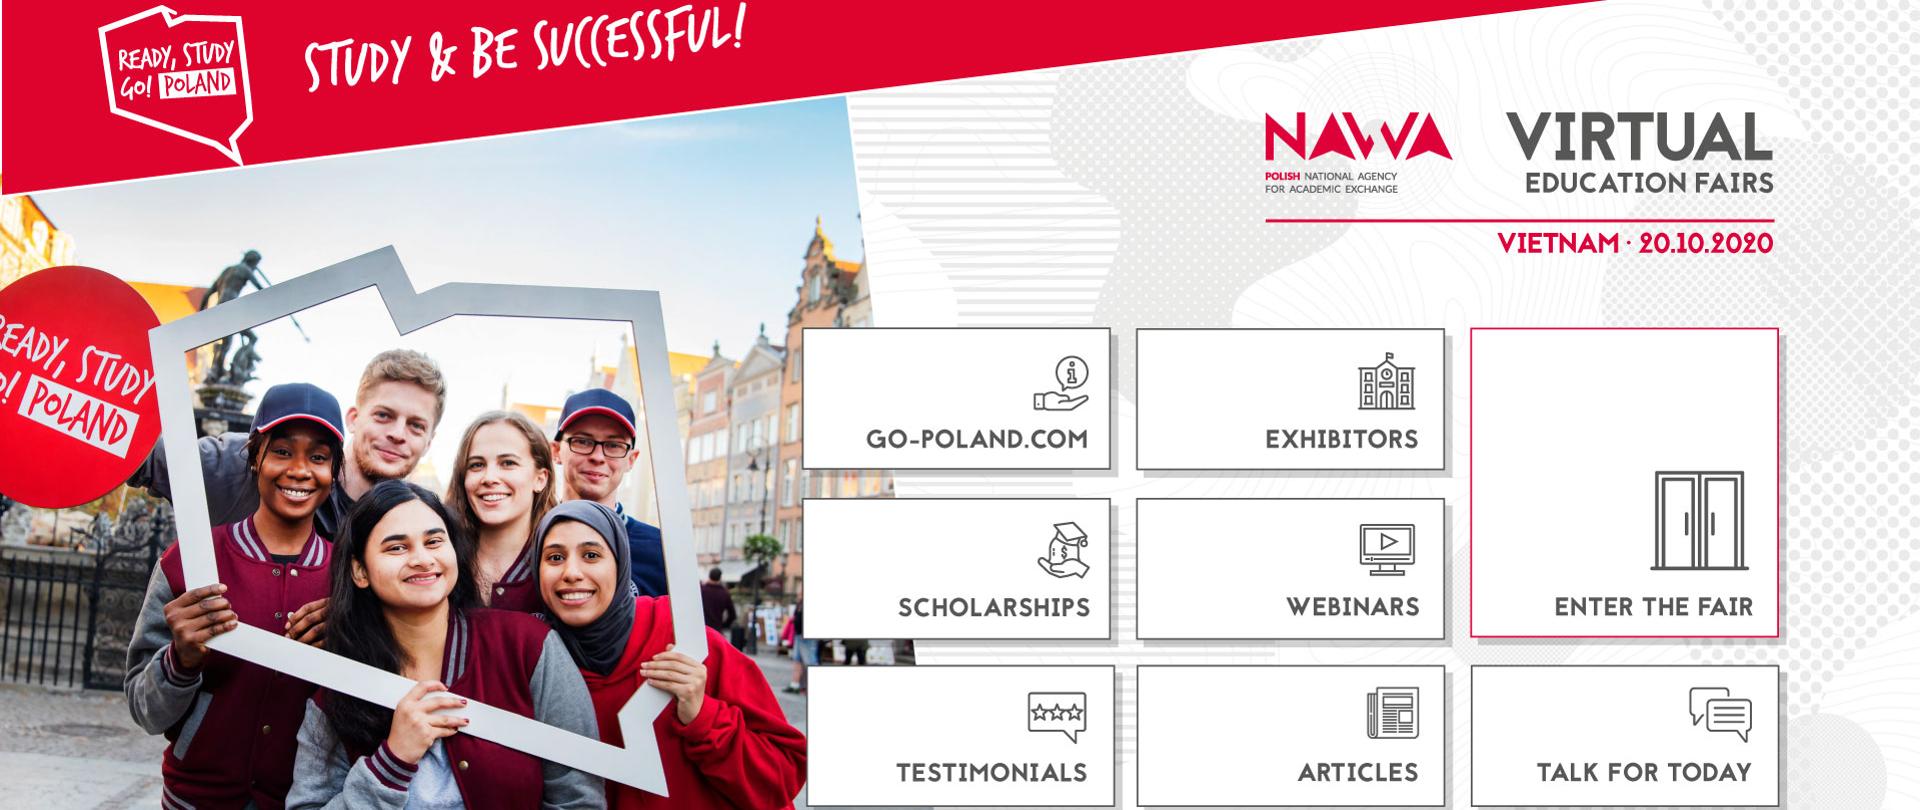 Ready, Study, Go! Poland/ Virtual education fairs by NAWA